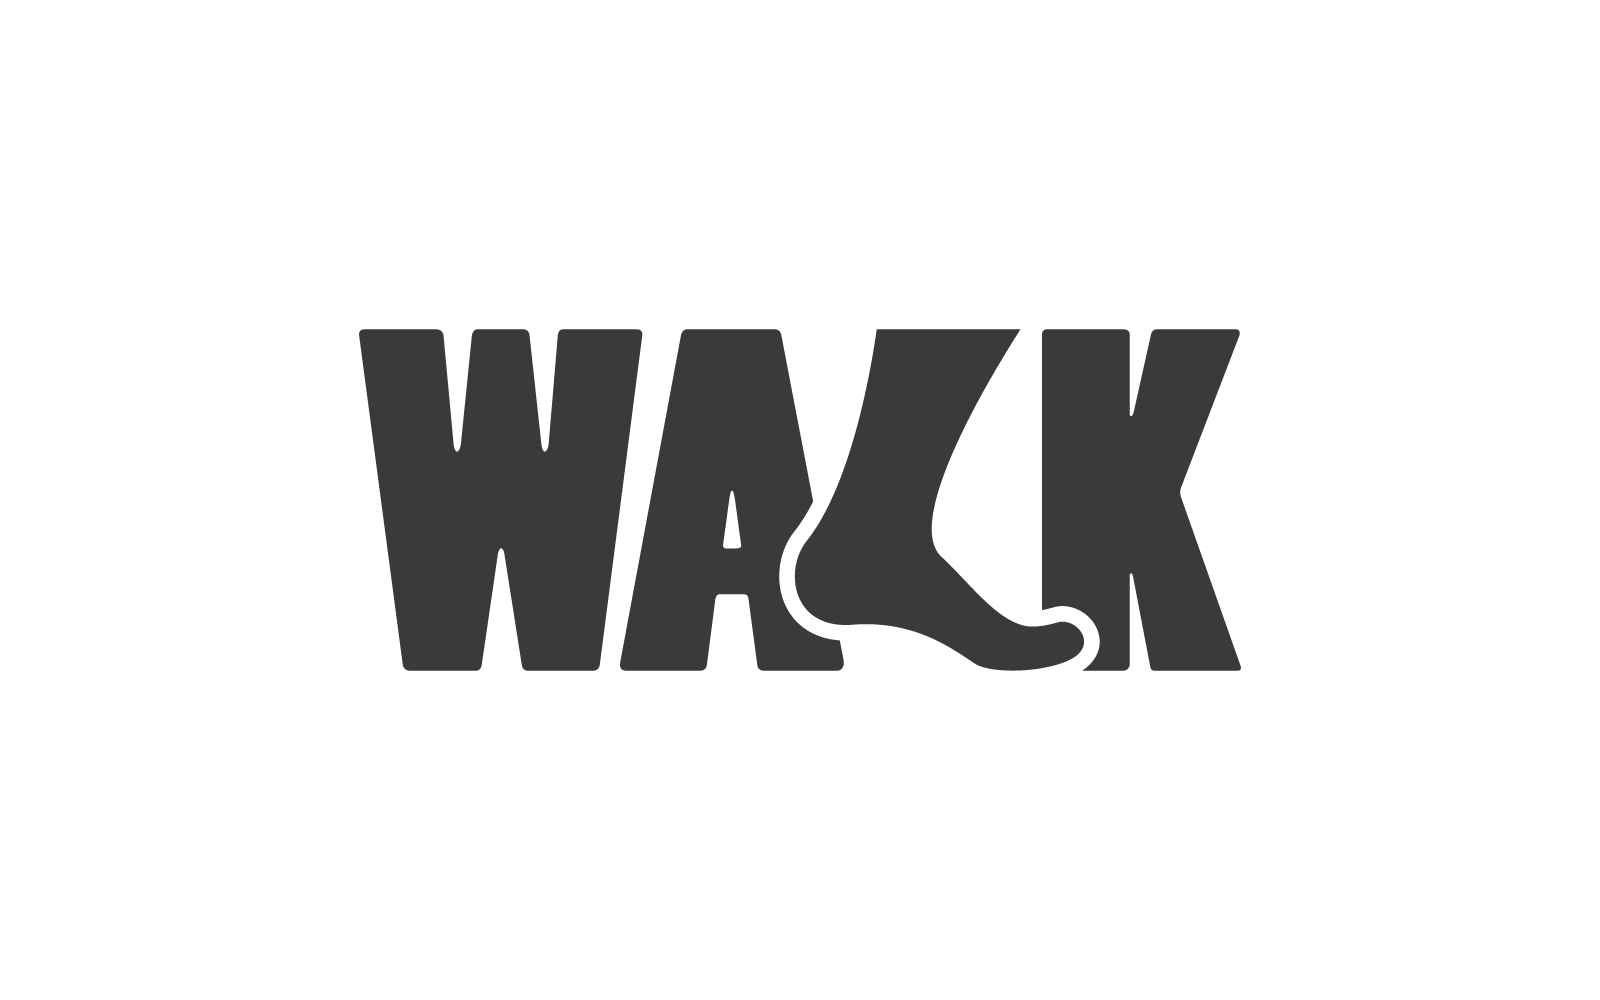 Foot walk illustration logo vector design Logo Template